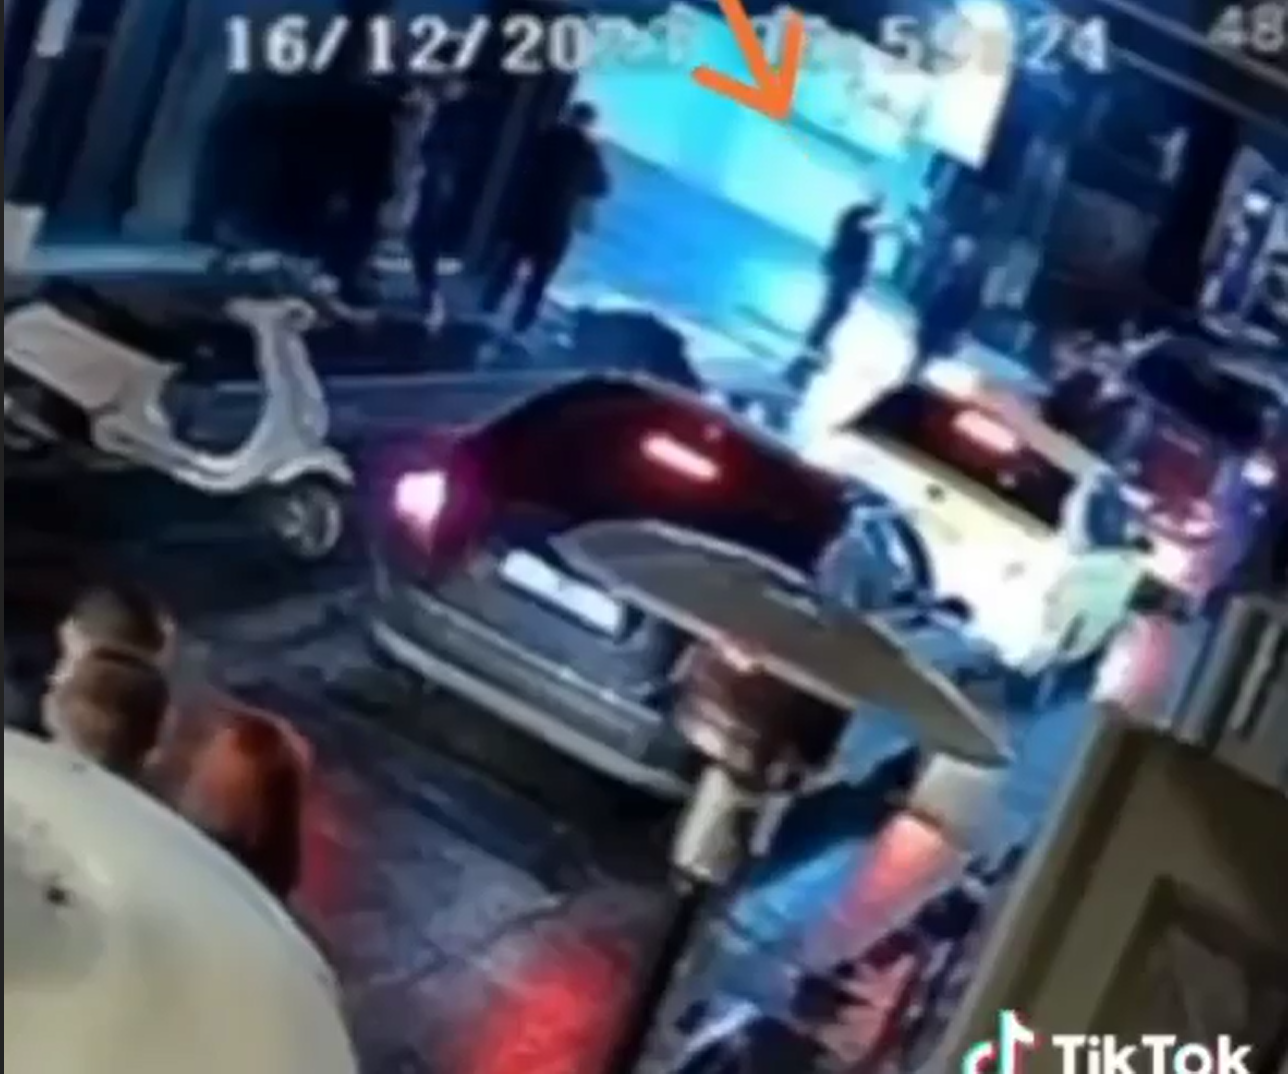 Βίντεο ντοκουμέντο με τους πυροβολισμούς στο Γκάζι. Σε πολύ σοβαρή κατάσταση ο ένας από τους τρεις τραυματίες